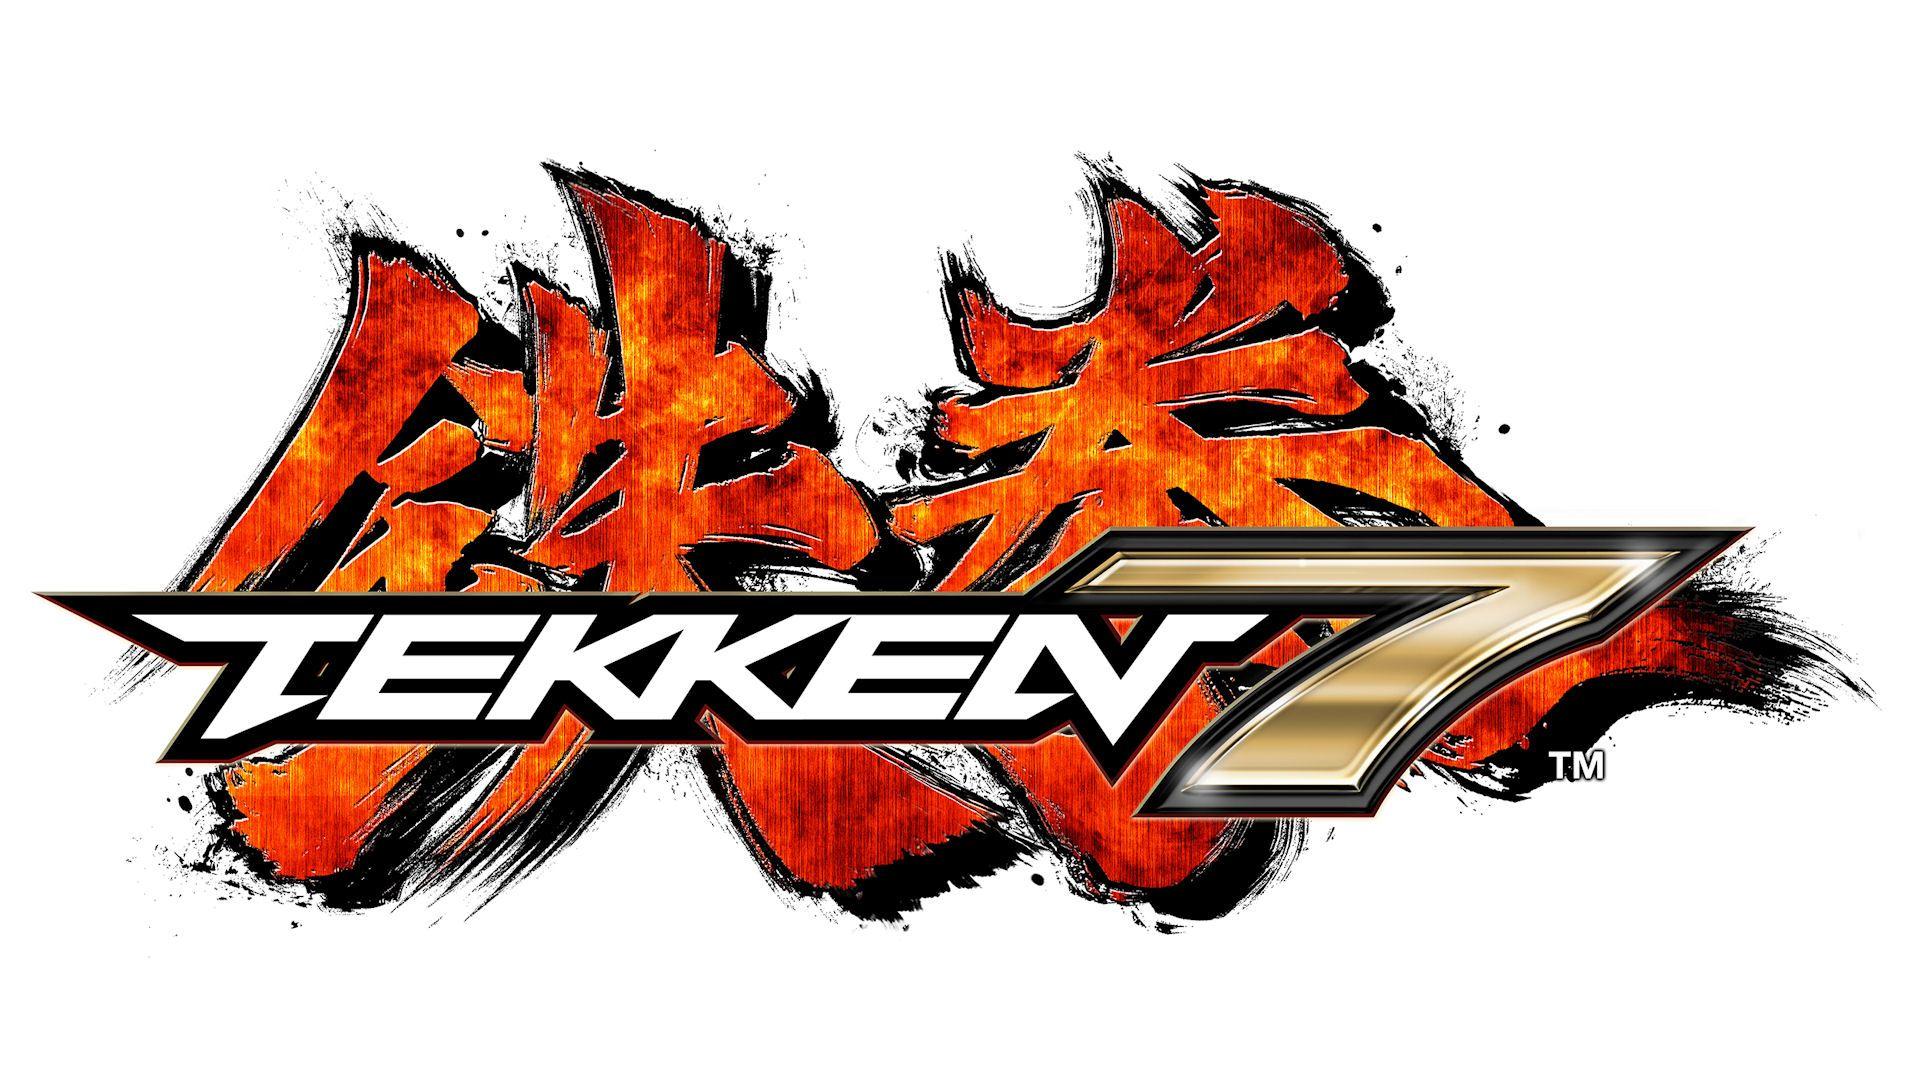 Tekken Logo - Tekken 7 | Logopedia | FANDOM powered by Wikia